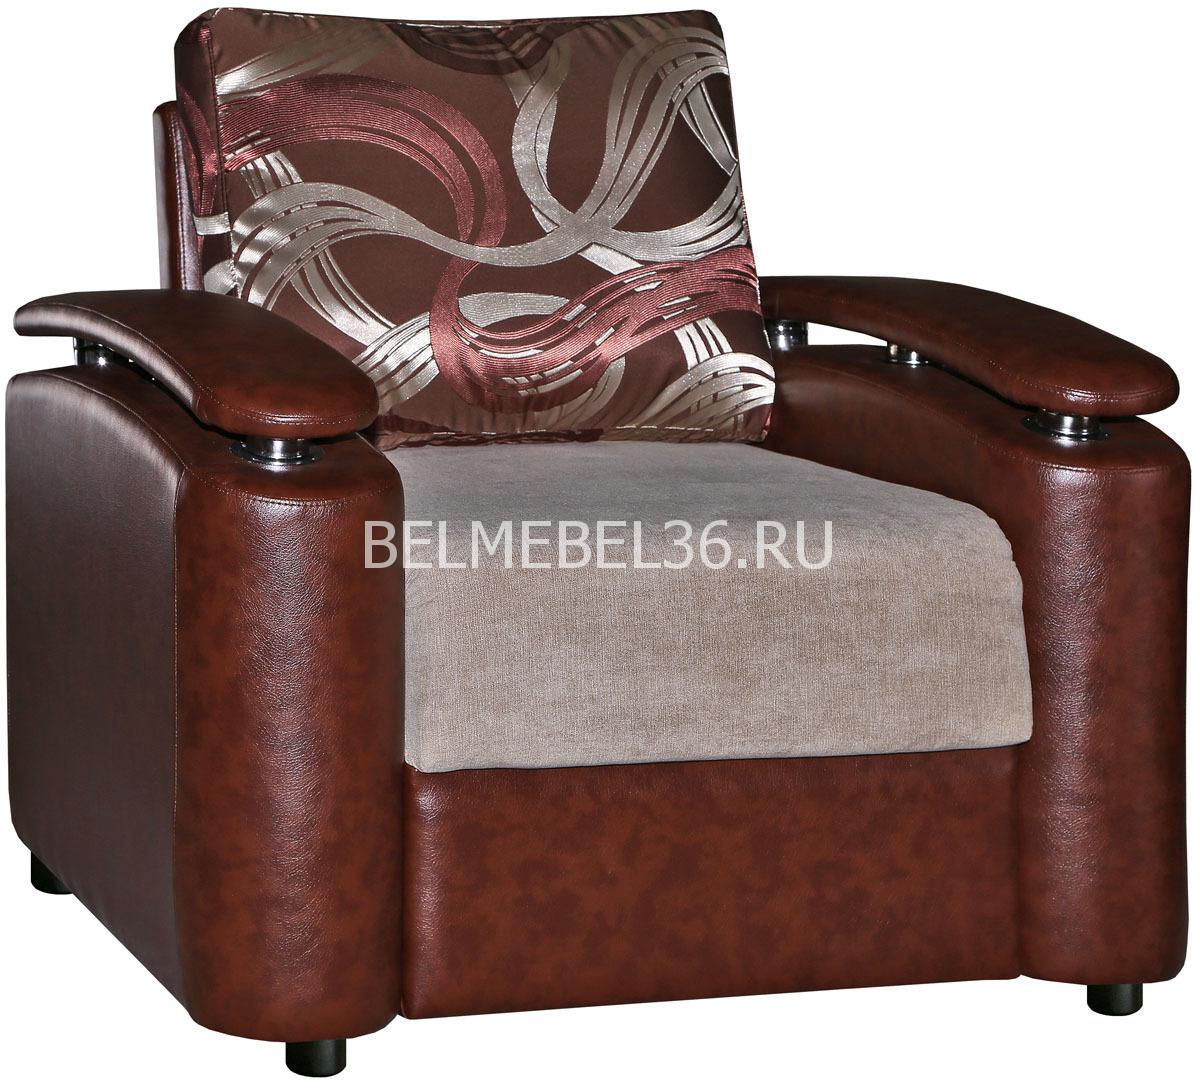 Кресло Милори (12) П-Д146 | Белорусская мебель в Воронеже